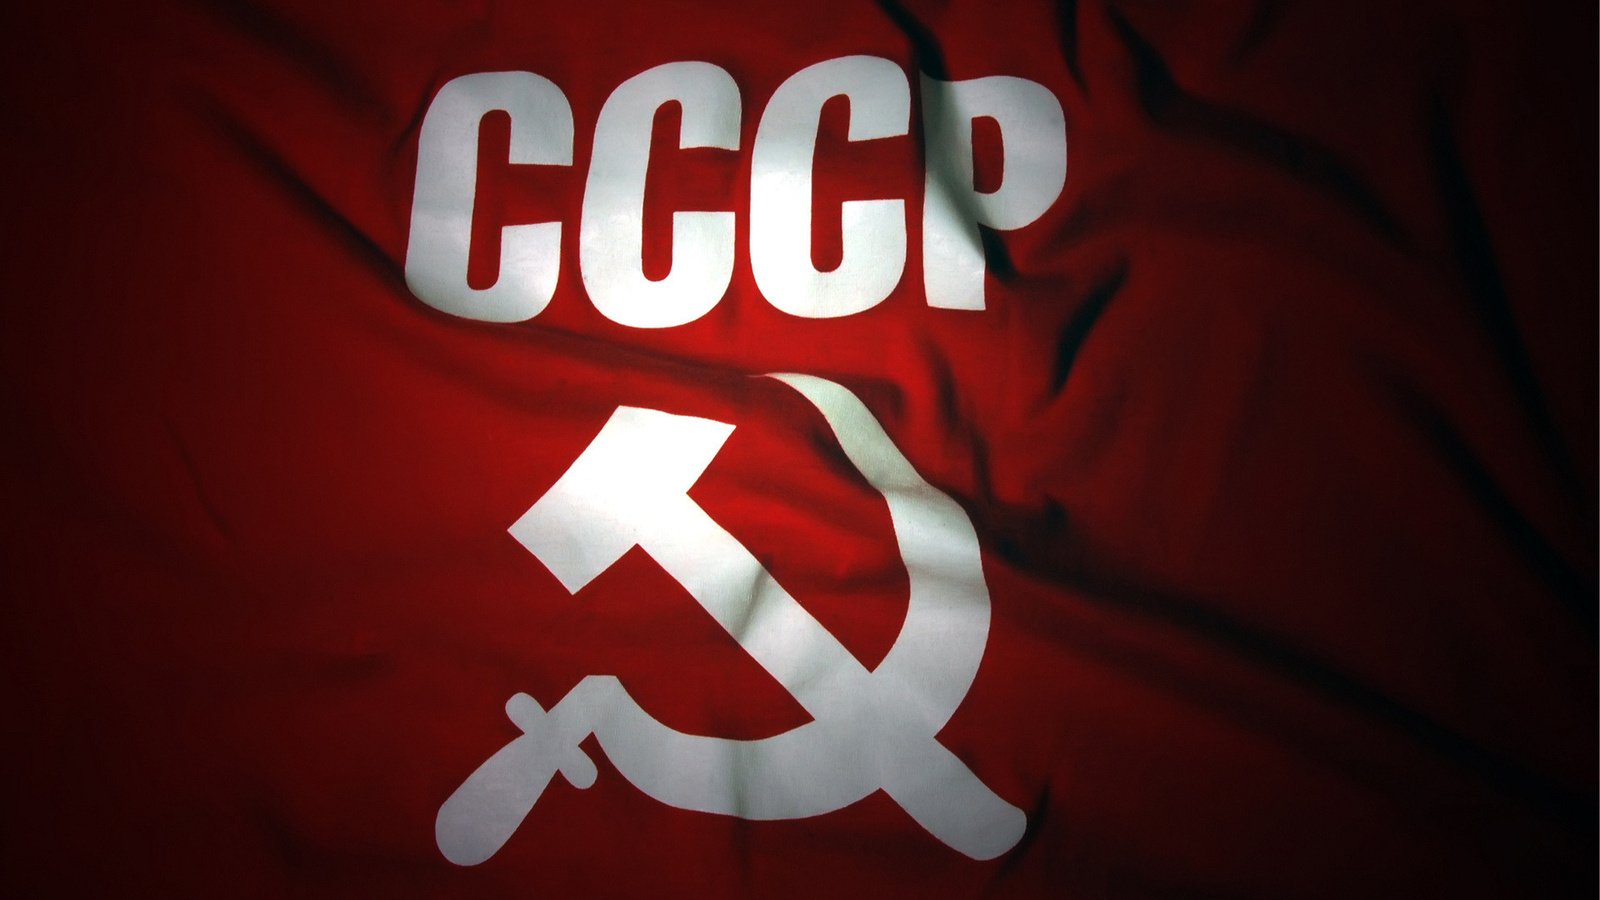 Флаг СССР HD фото картинки, обои рабочий стол